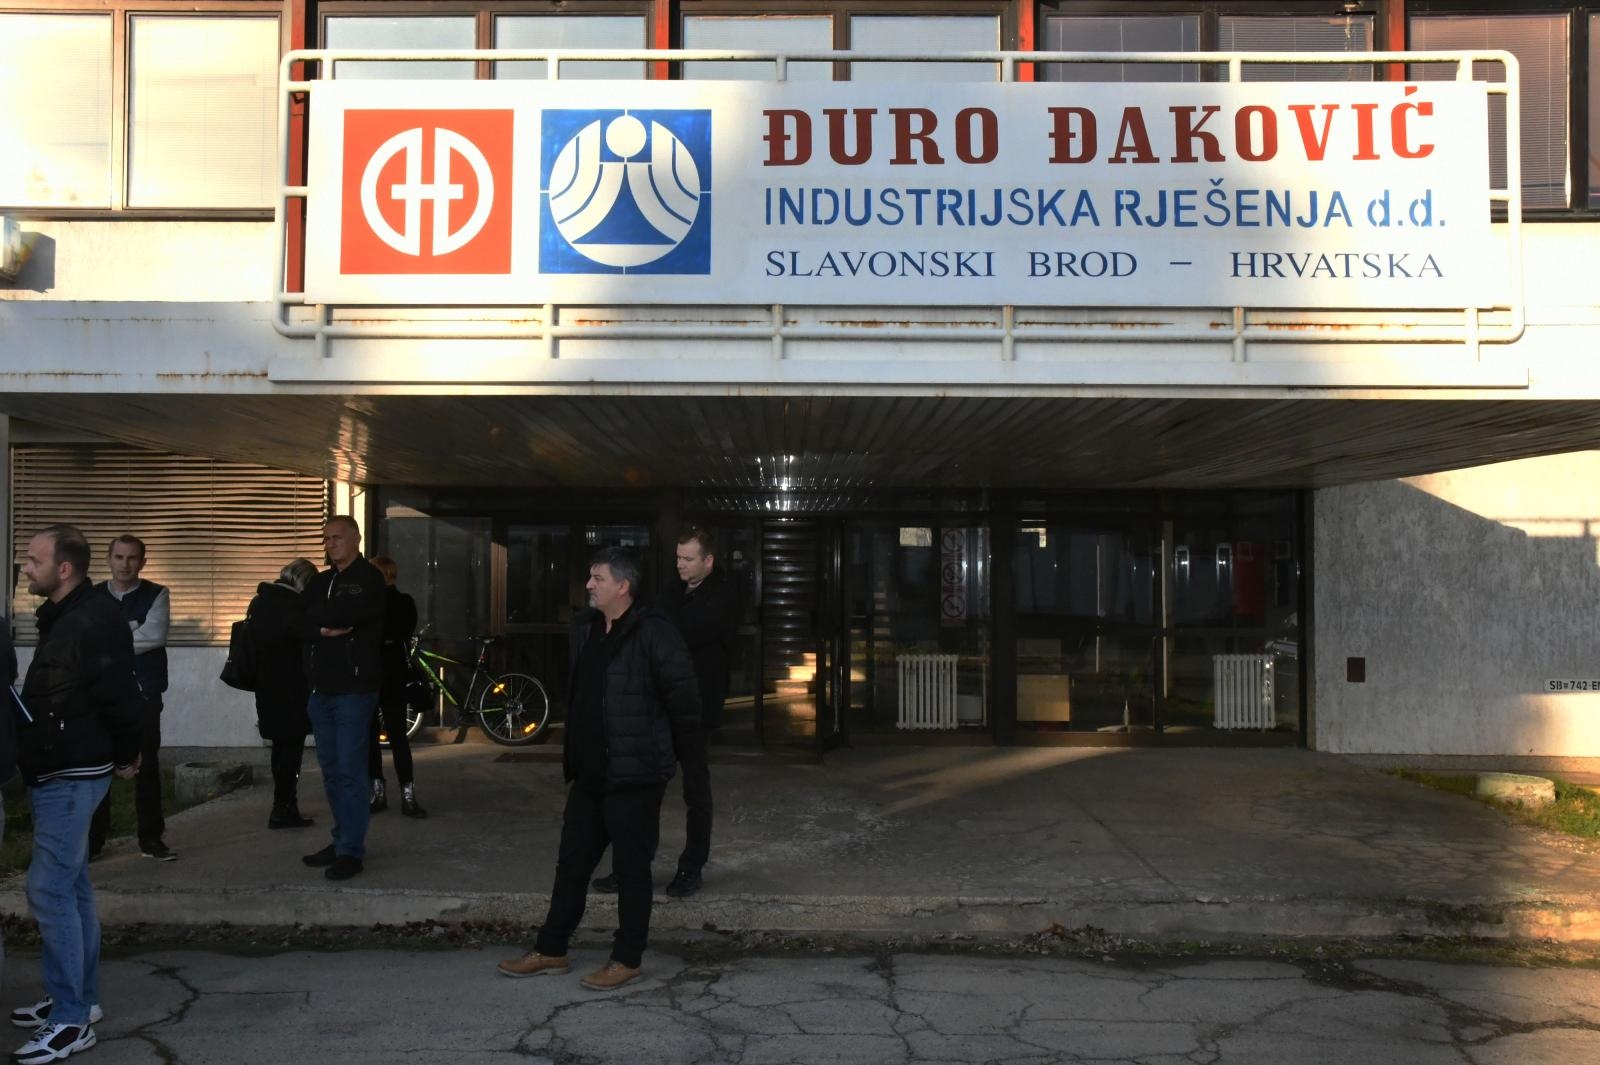 18.12.2019., Slavonski Brod -  Konferencija za medije strajkaskog odbora tvrtke Djuro Djakovic Industrijska rjesenja povodom neisplate placa.
Photo: Ivica Galovic/PIXSELL